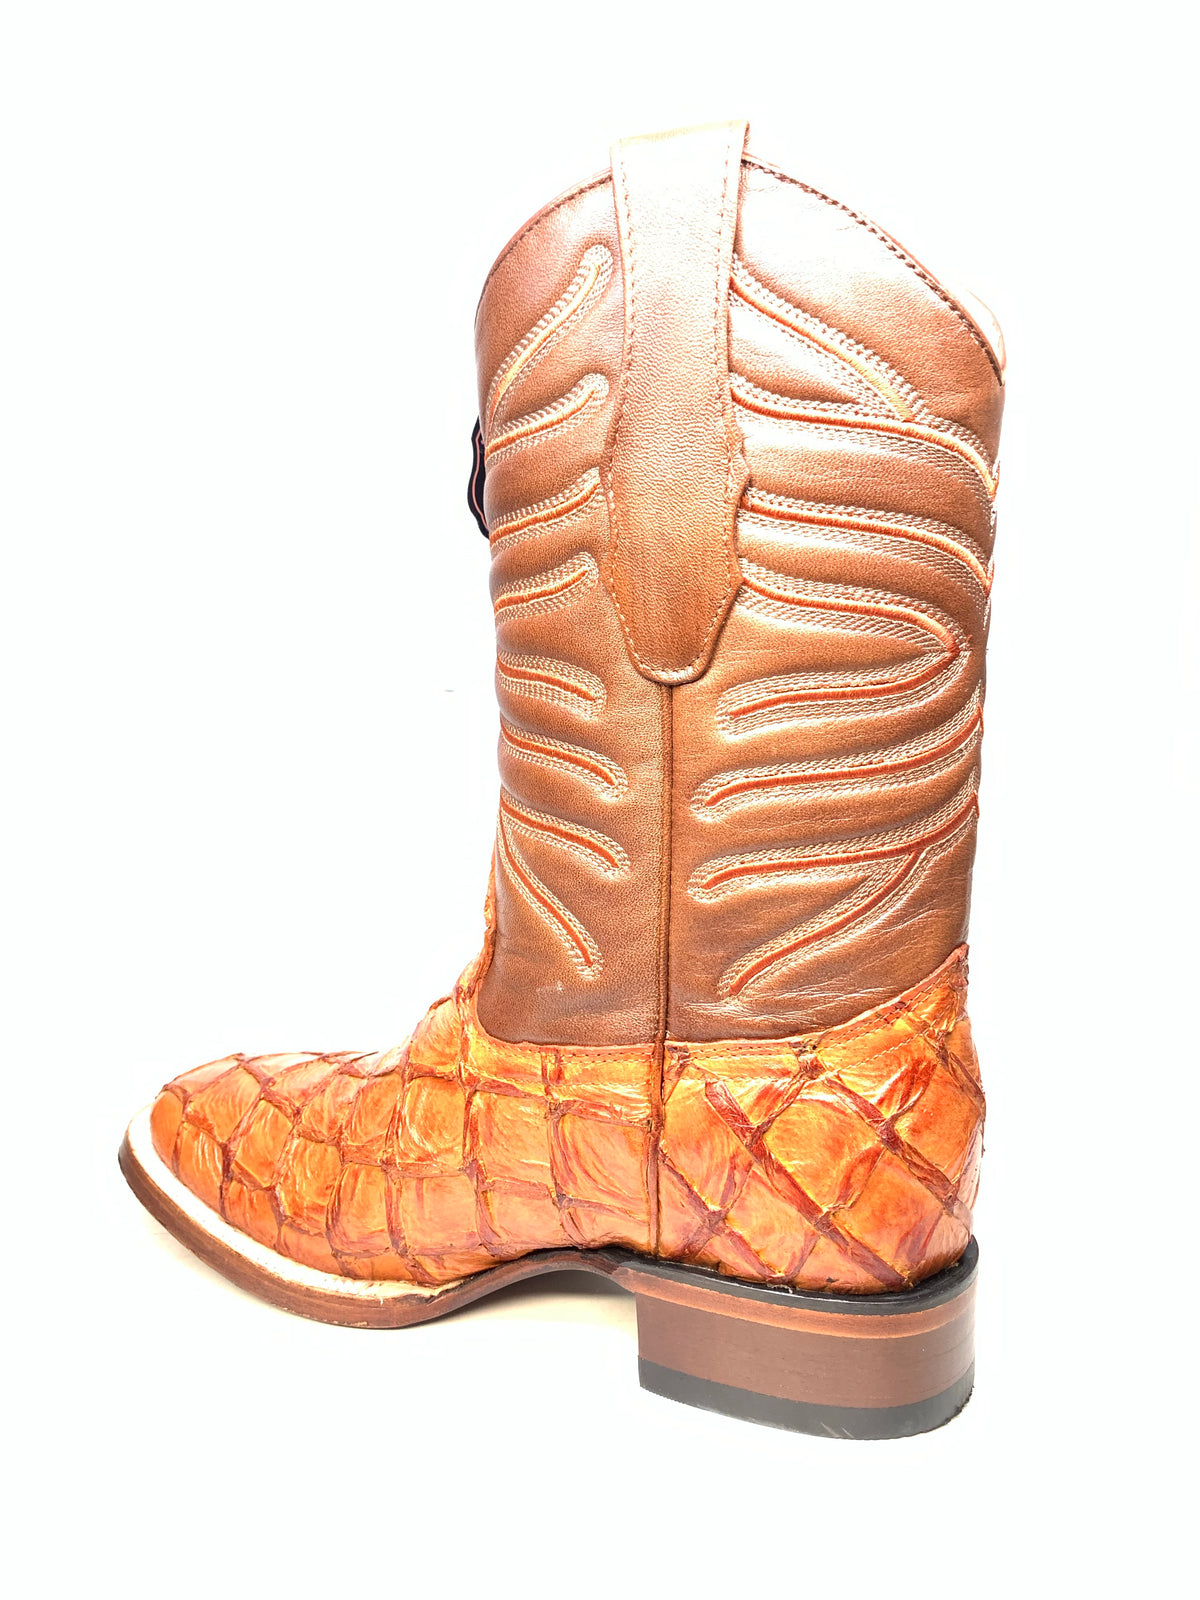 Los Altos Boots Cognac Pirarucu Square toe Cowboy Boots - Dudes Boutique